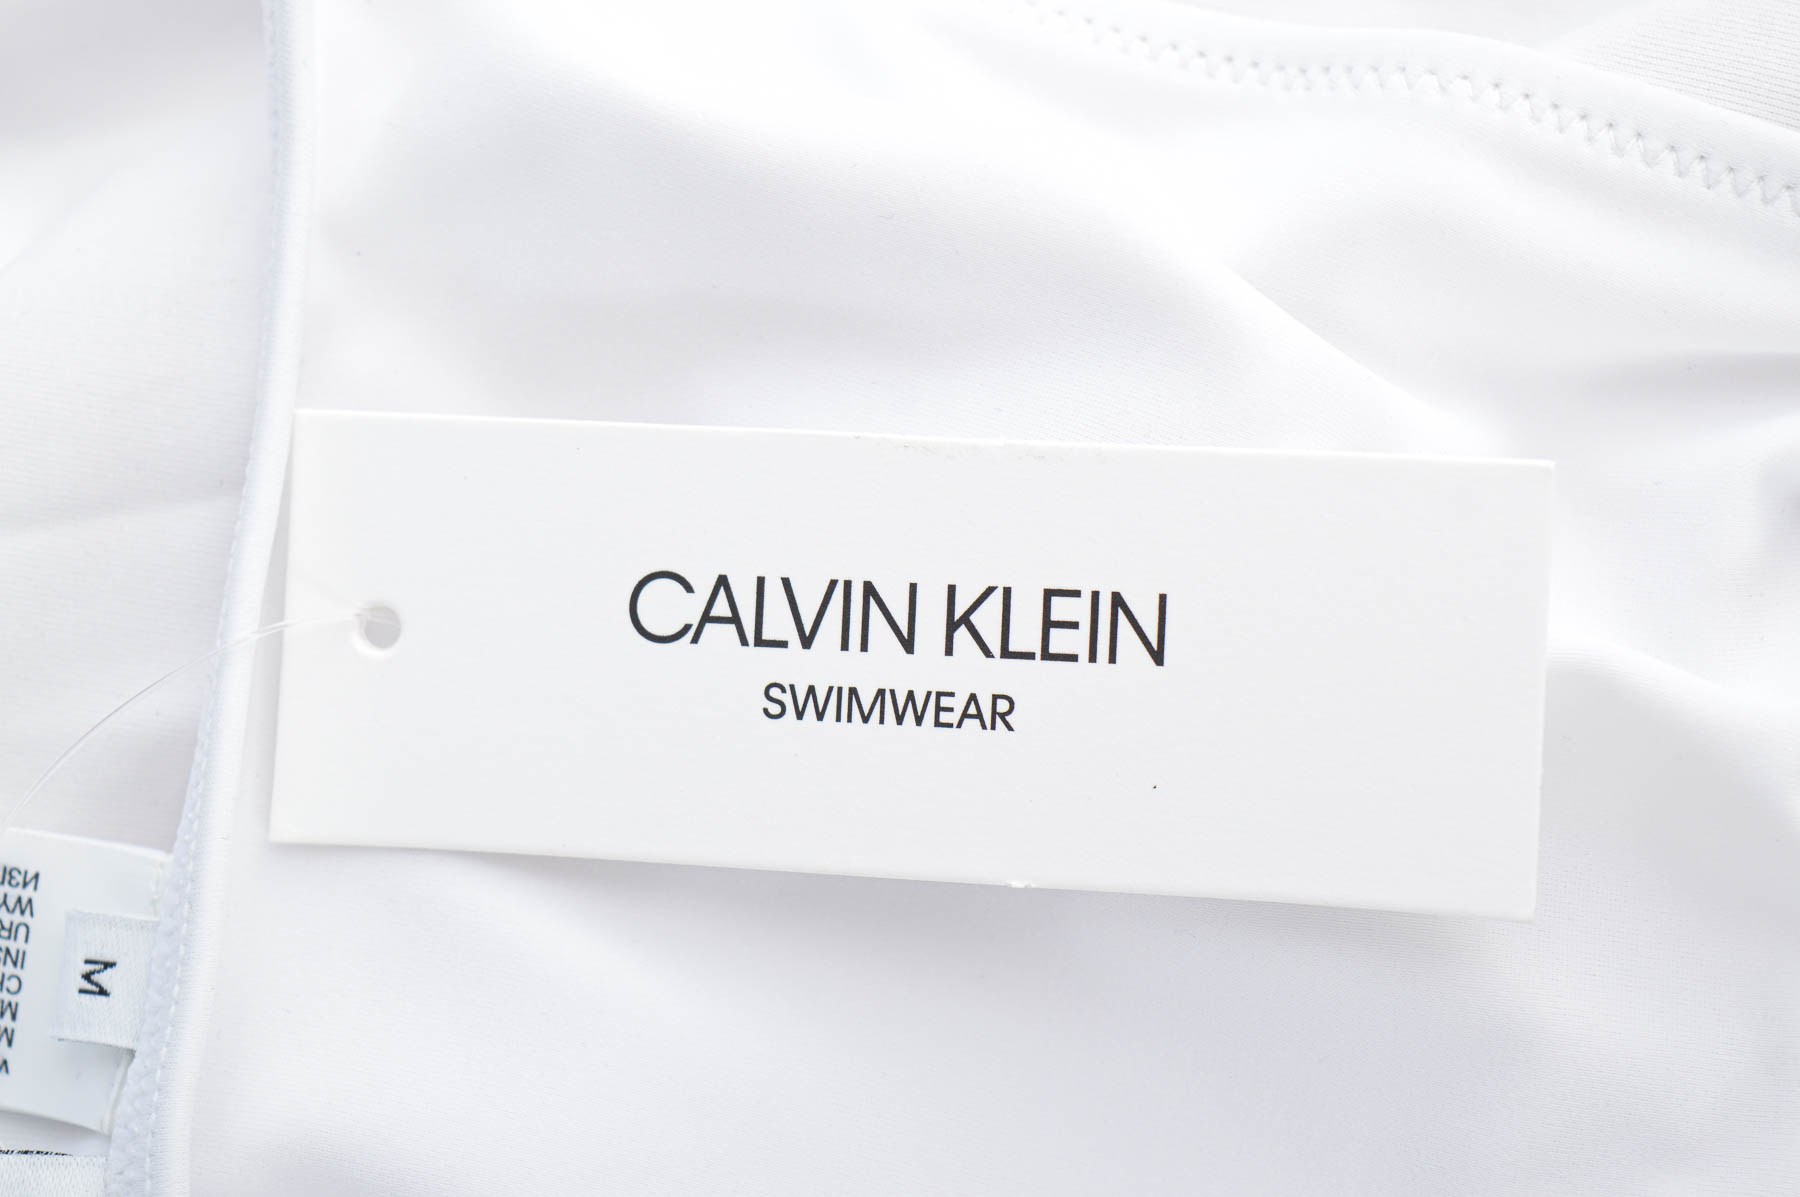 Damskie stroje kąpielowe - CALVIN KLEIN SWIMWEAR - 2